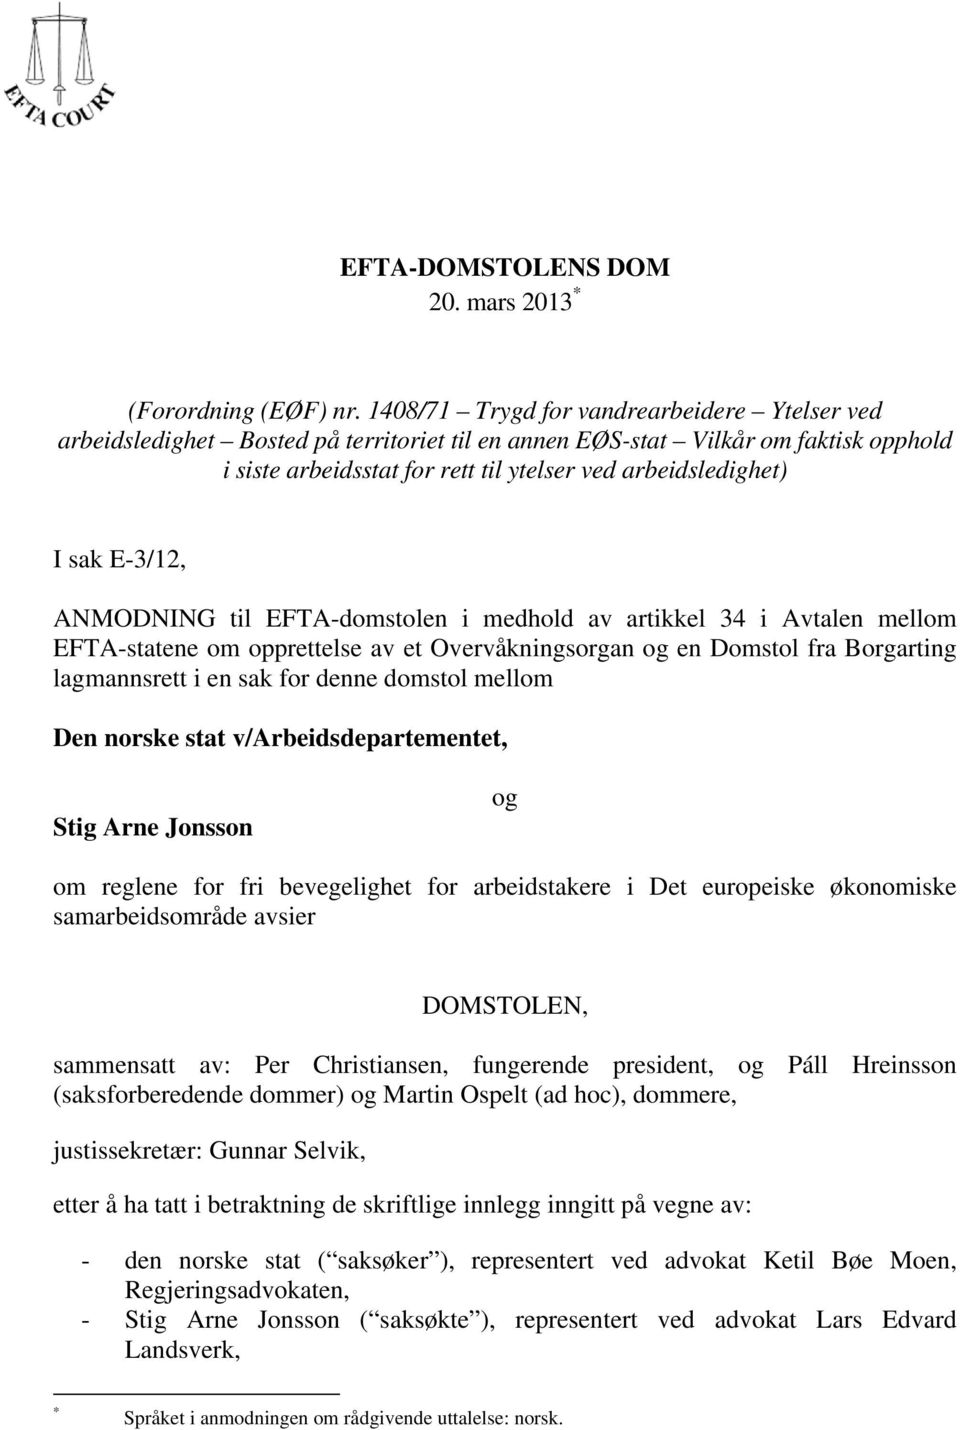 E-3/12, ANMODNING til EFTA-domstolen i medhold av artikkel 34 i Avtalen mellom EFTA-statene om opprettelse av et Overvåkningsorgan og en Domstol fra Borgarting lagmannsrett i en sak for denne domstol